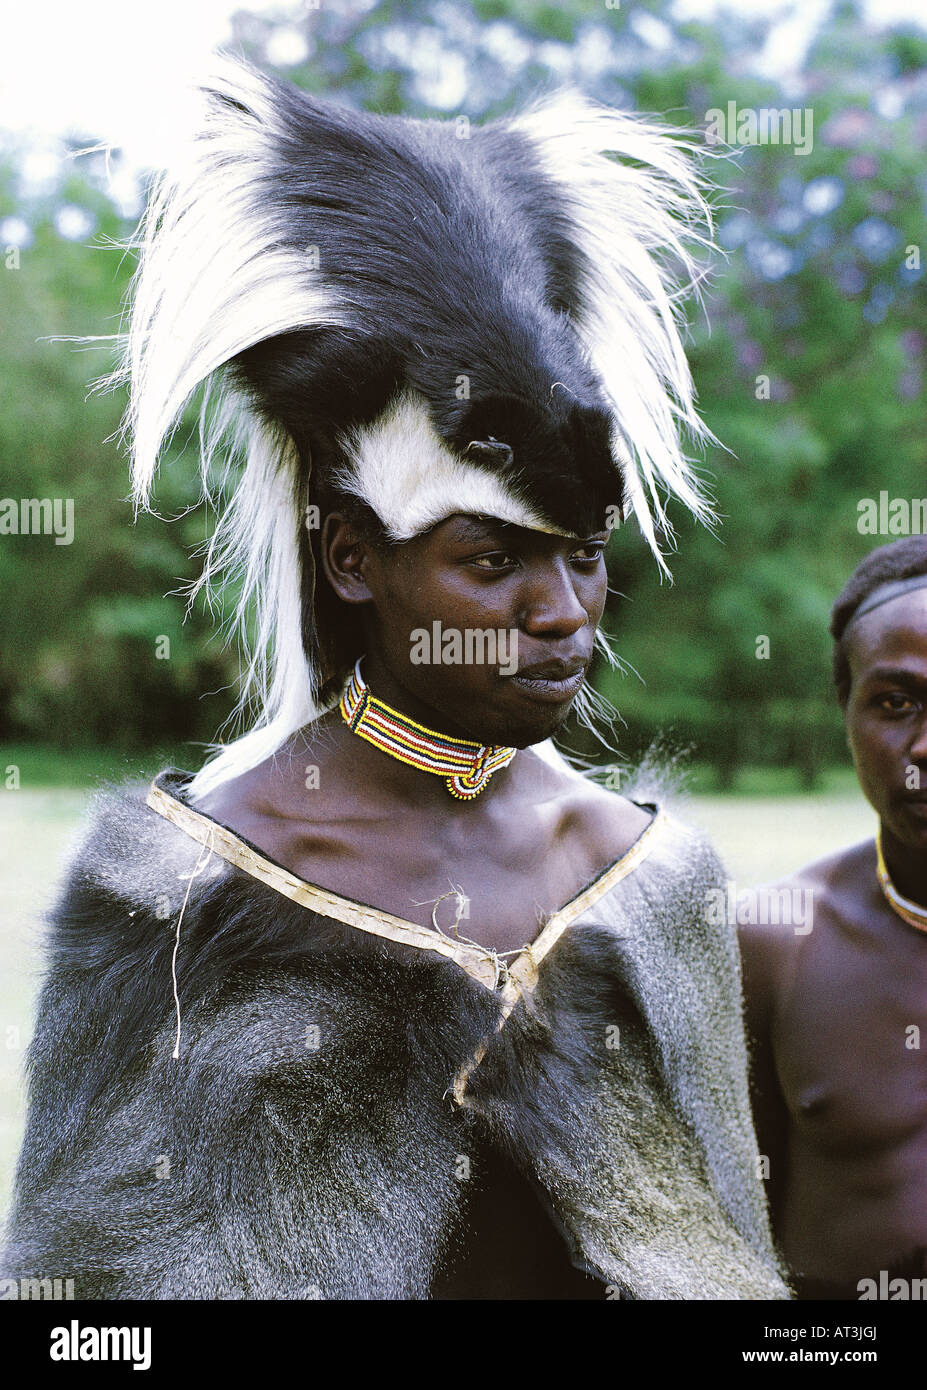 Les jeunes d'Afrique noire portant la peau traditionnelle cape et un chapeau  porté par le Laibon de chef de la tribu Nandi au Kenya Afrique Photo Stock  - Alamy